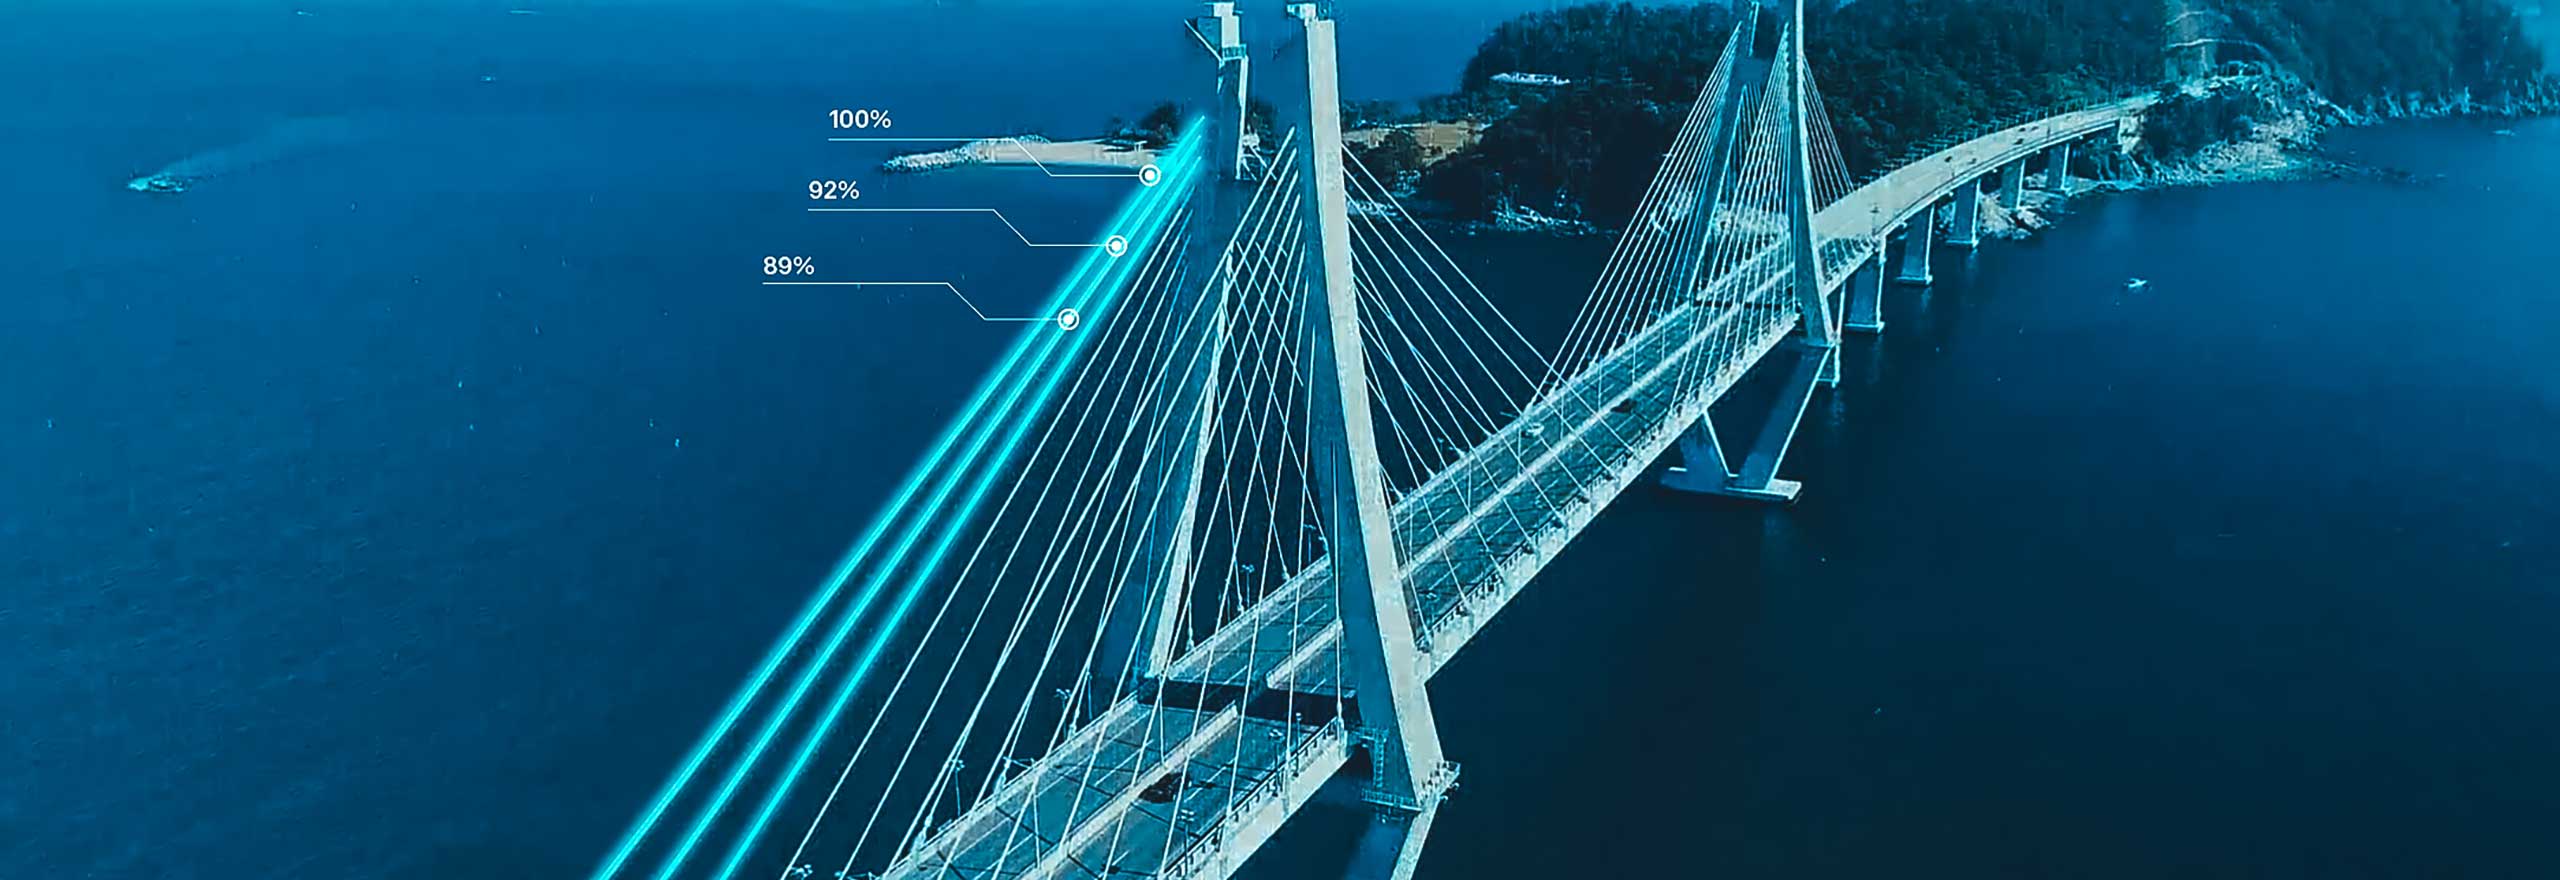 Bild einer Brücke